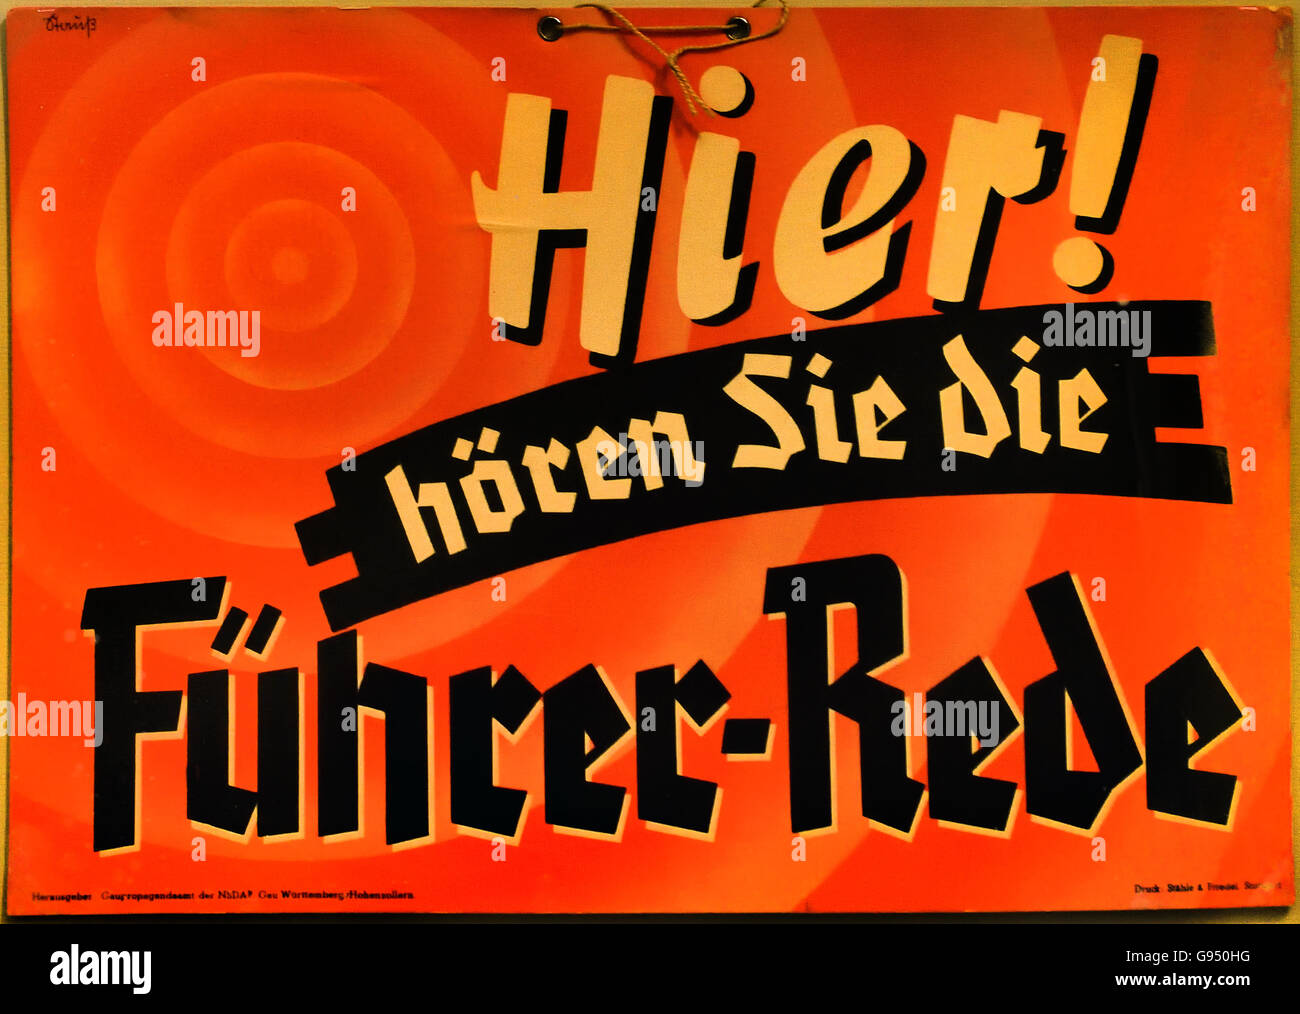 Hier hören sie die Führer Rede - Here you hear the leaders speech   Berlin Nazi Germany Stock Photo